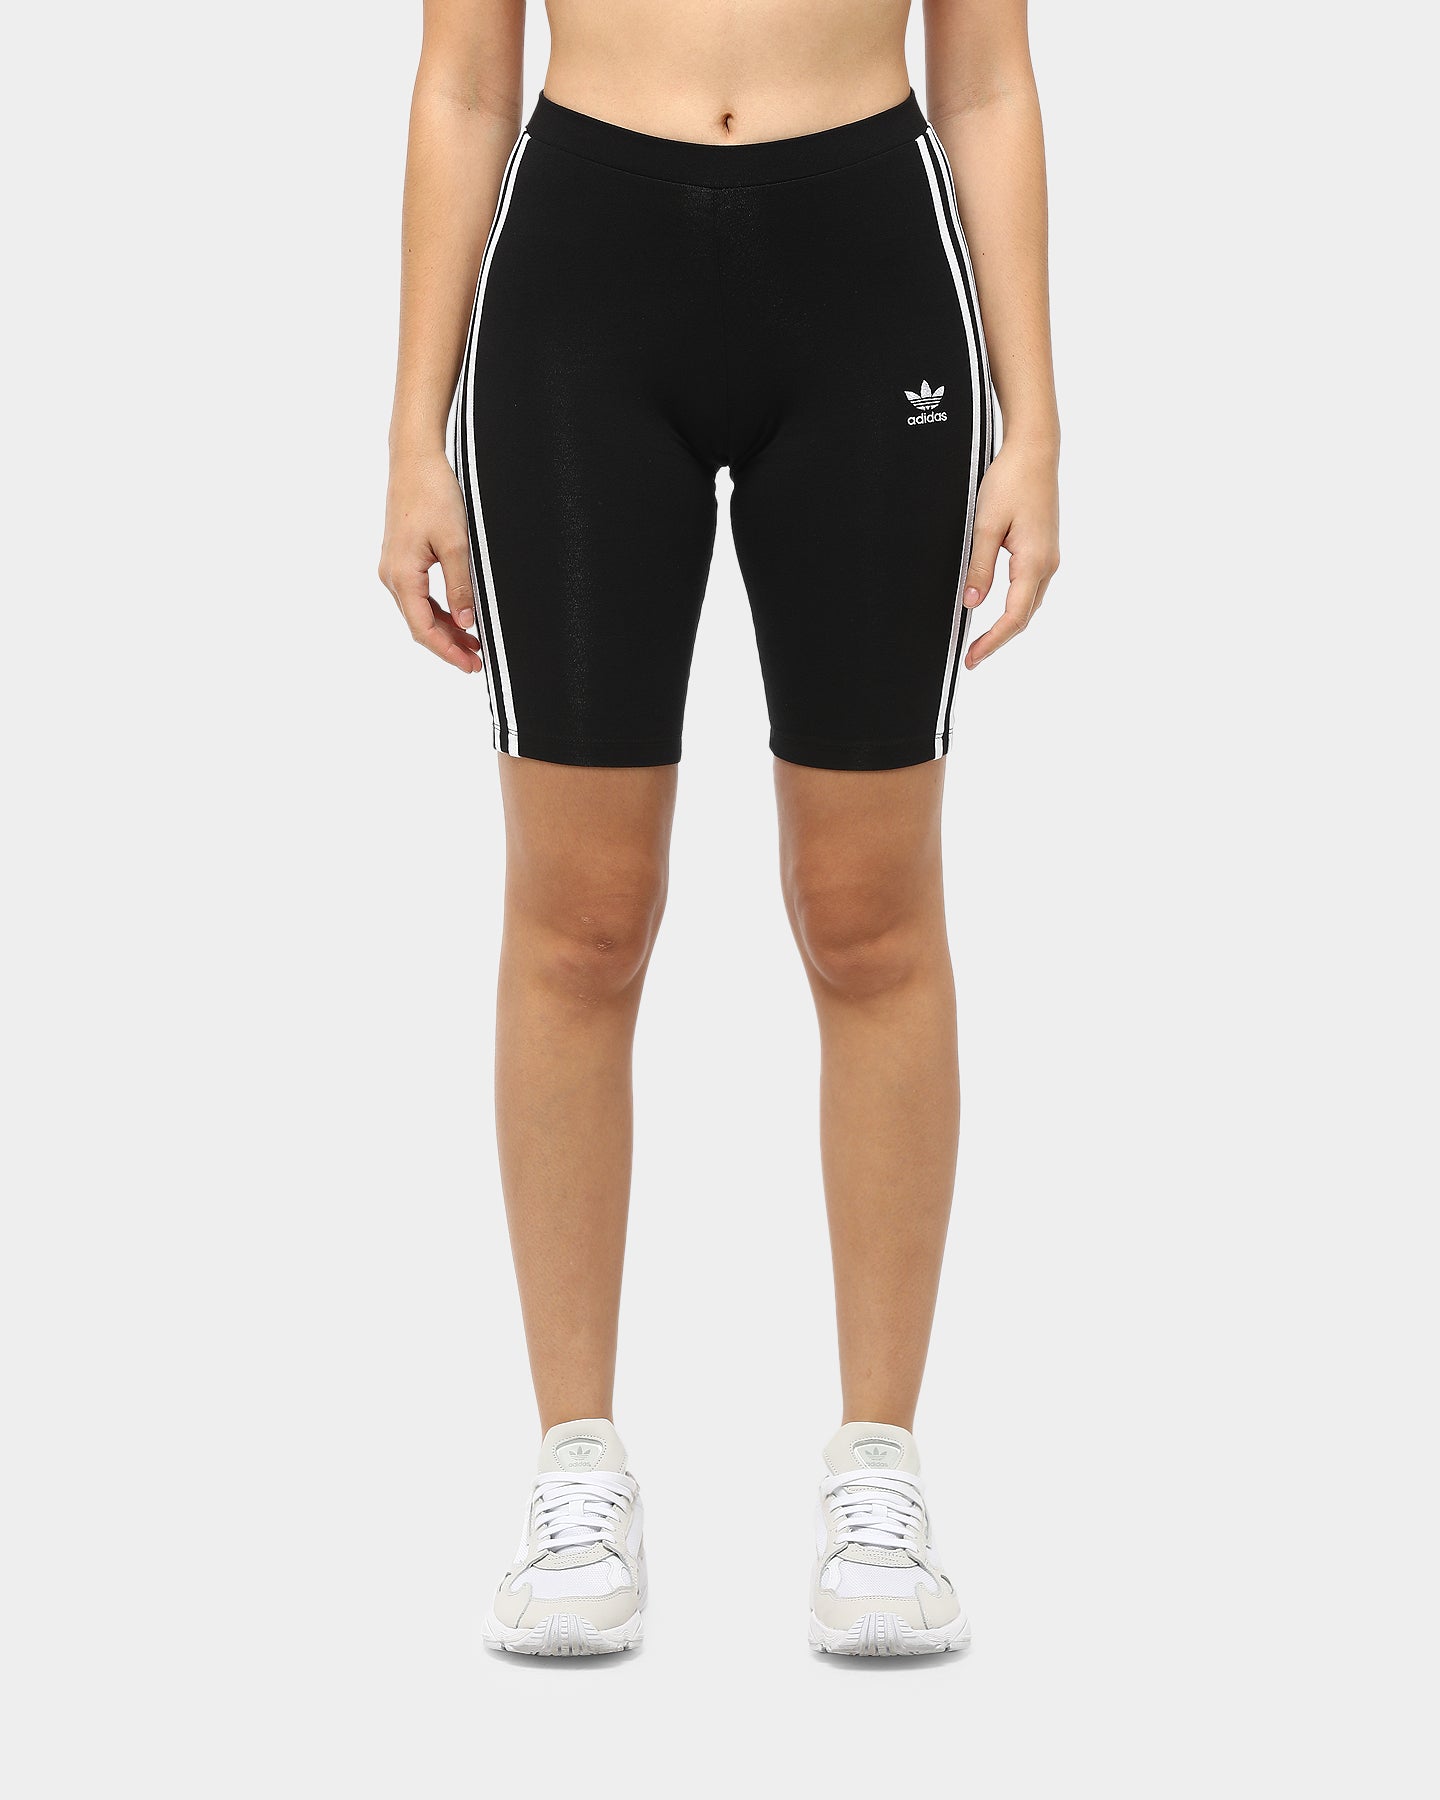 adidas shorts cycling